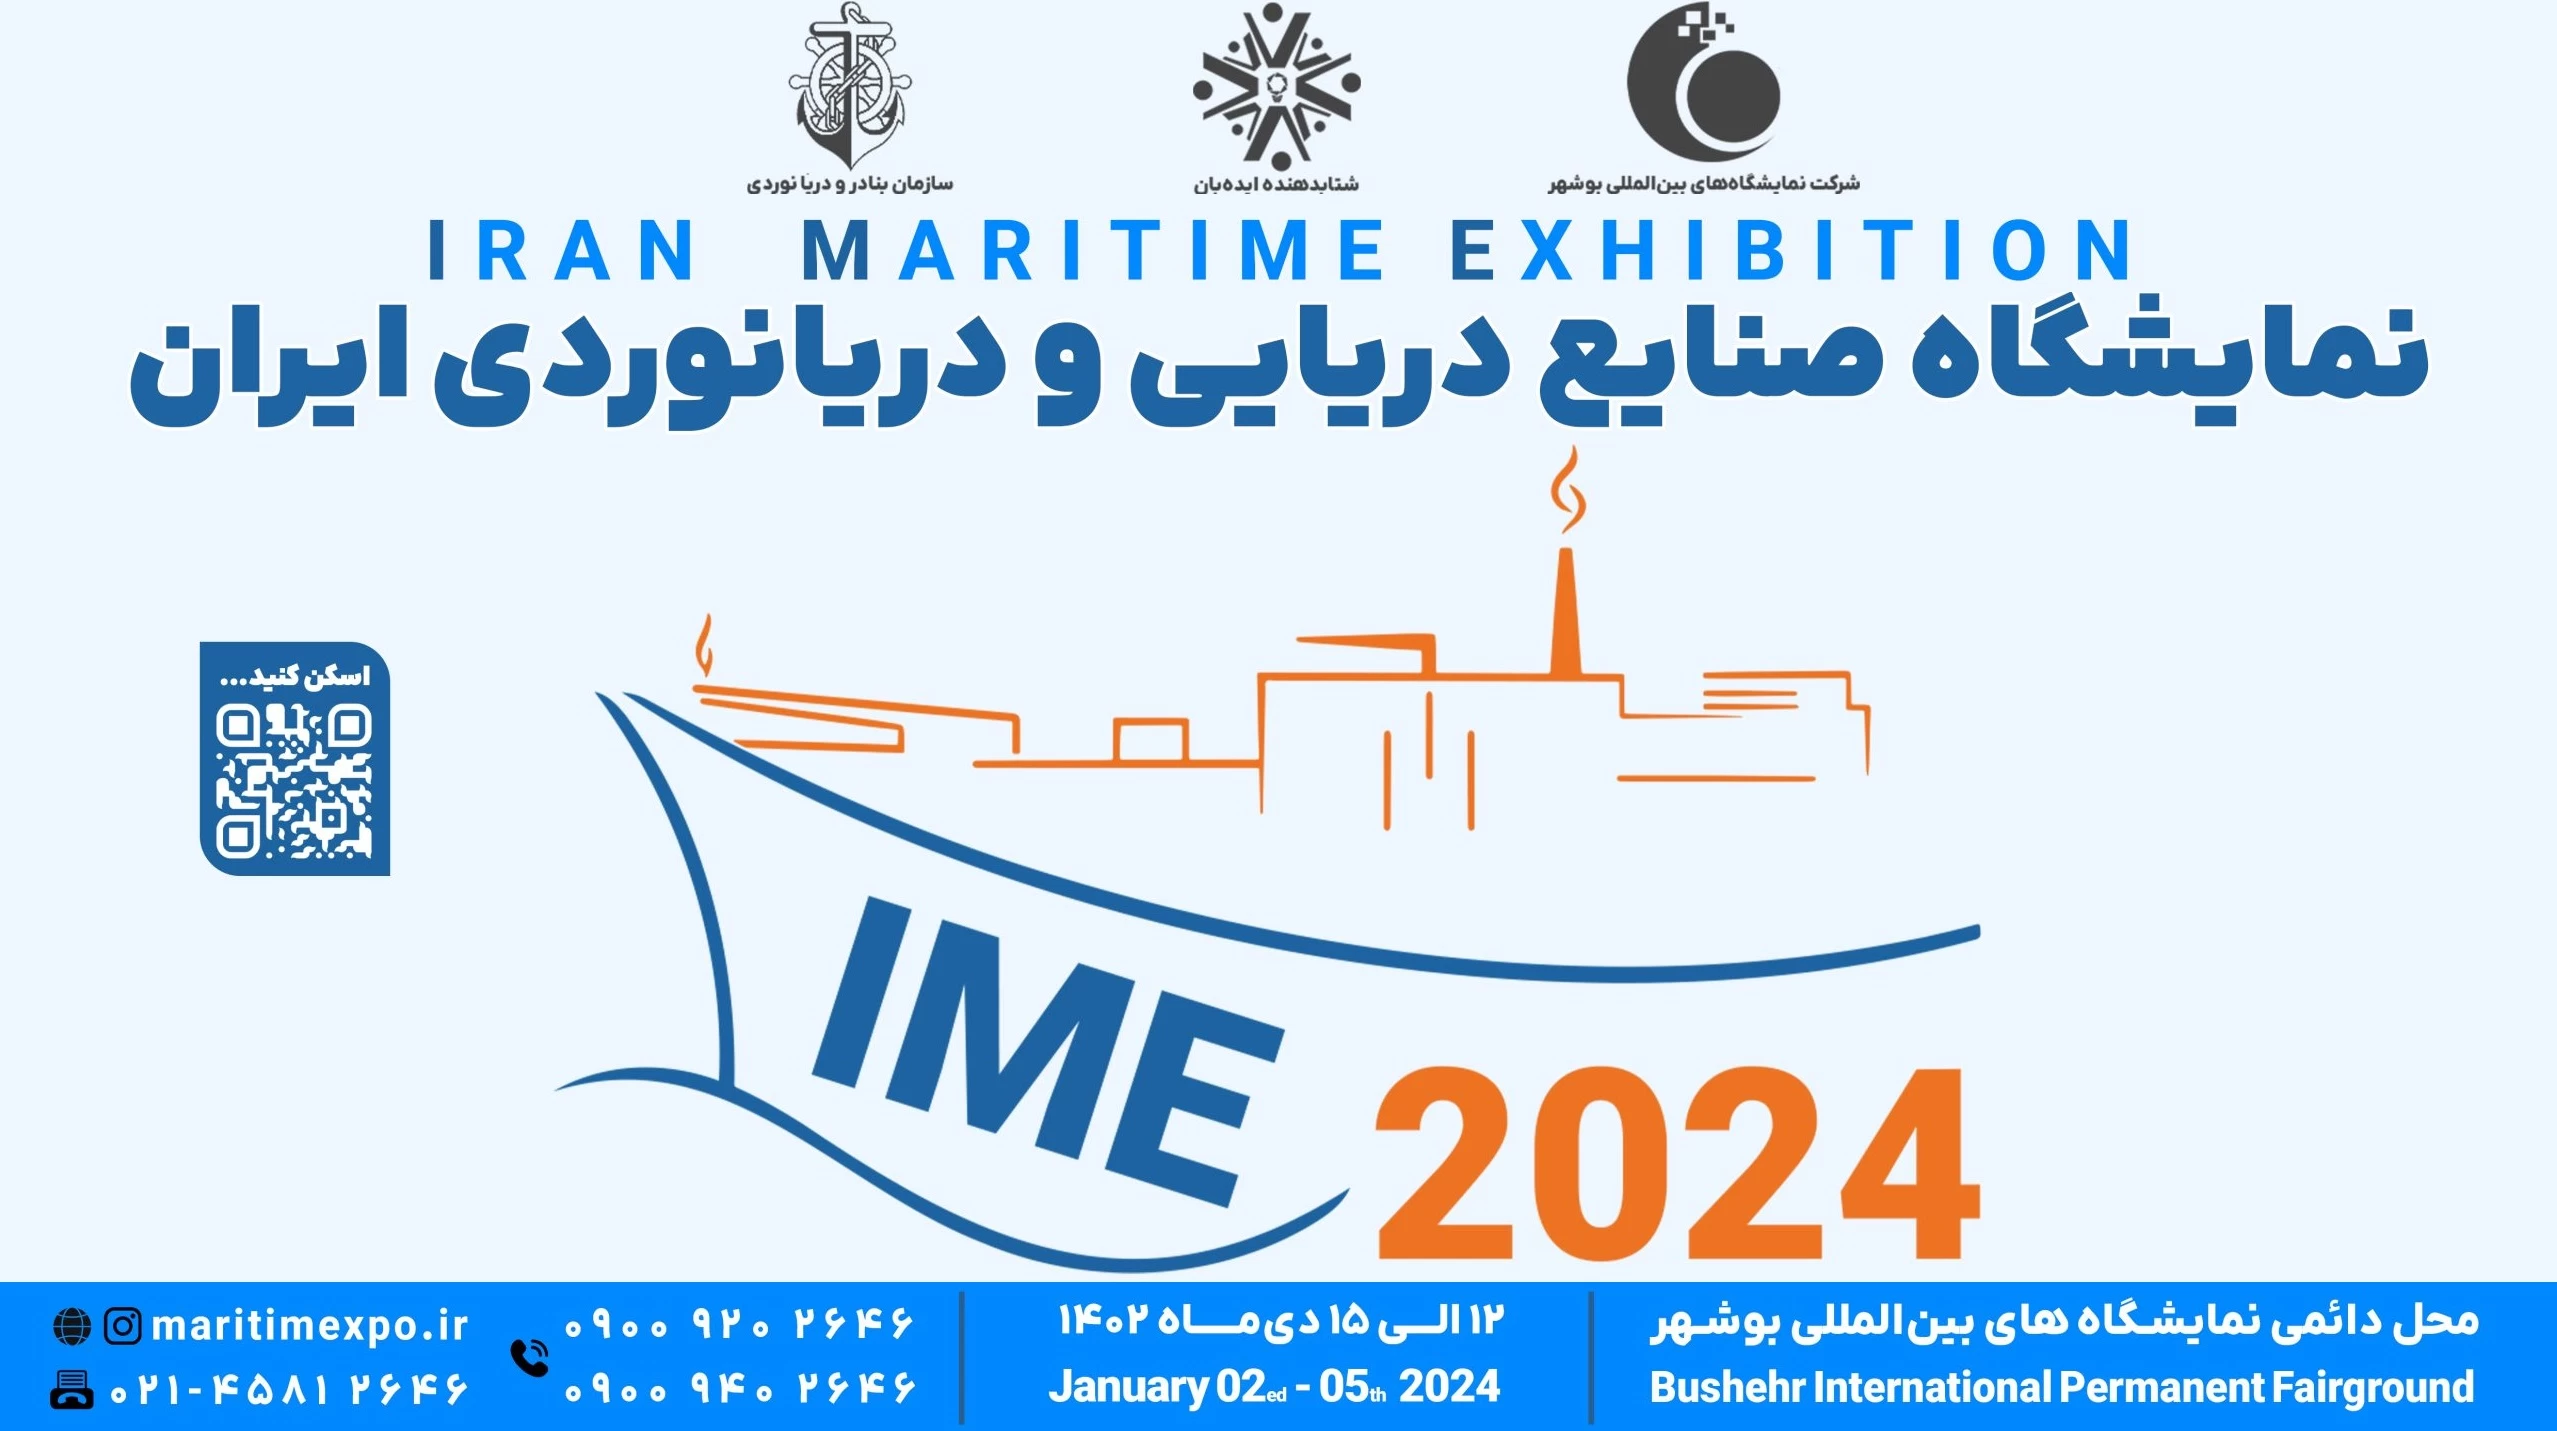 نمایشگاه صنایع دریایی و دریانوردی ایران در بوشهر